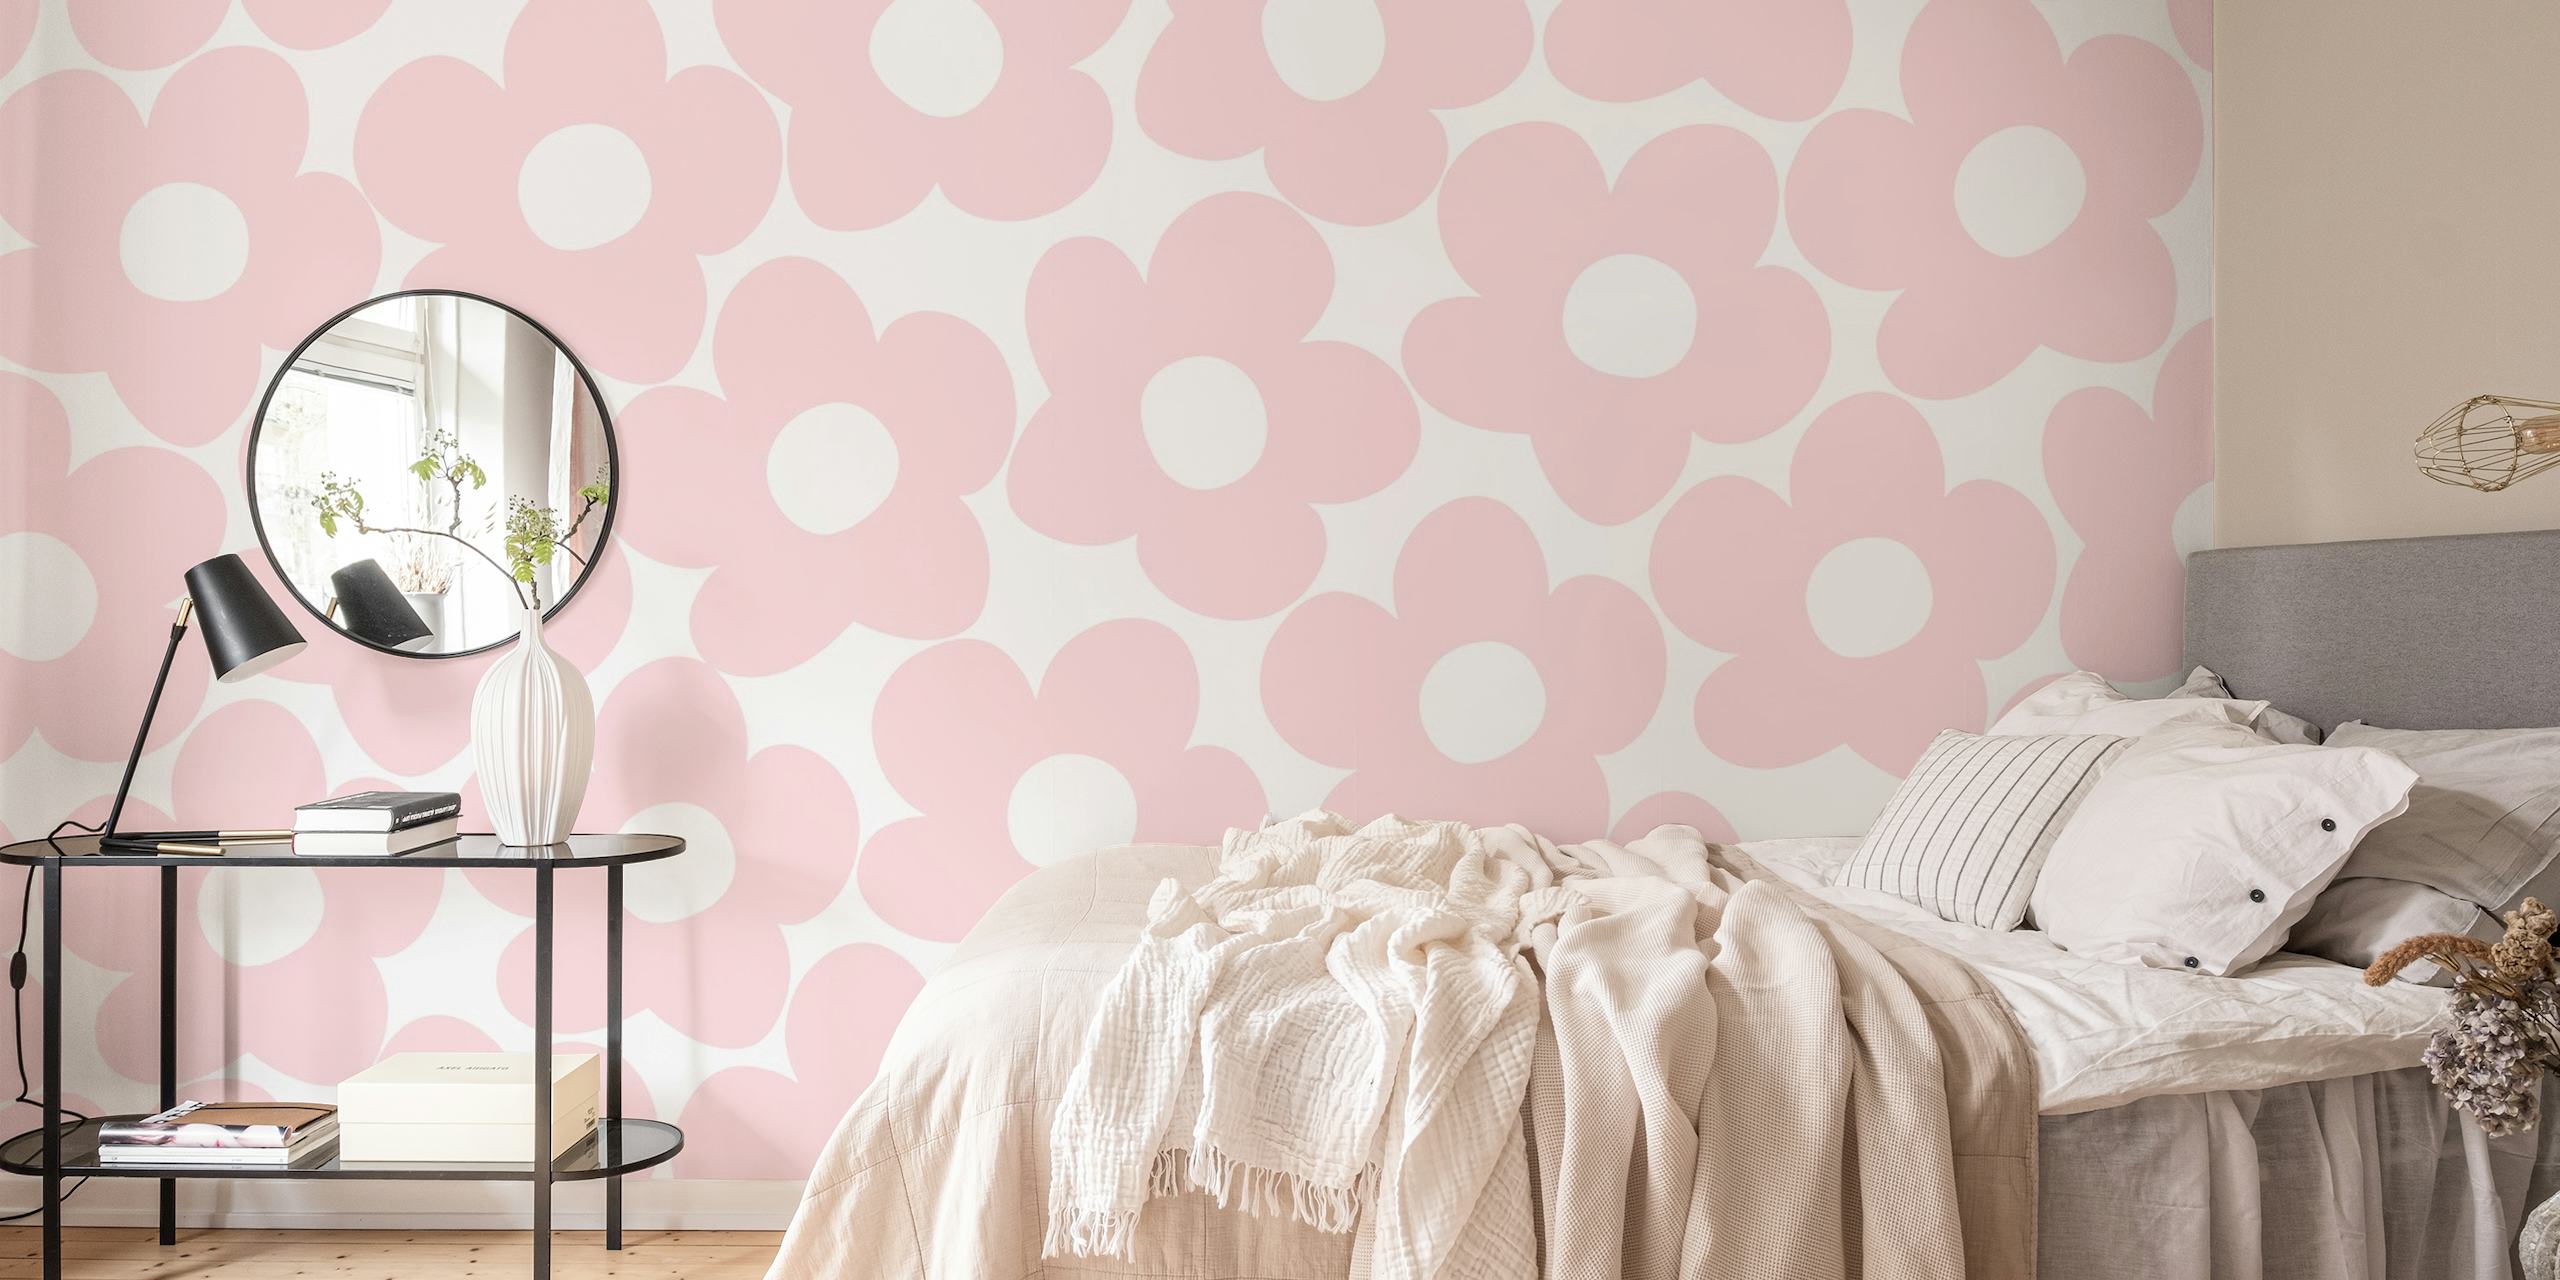 fotomural vinílico de parede margaridas retrô rosa blush com fundo branco